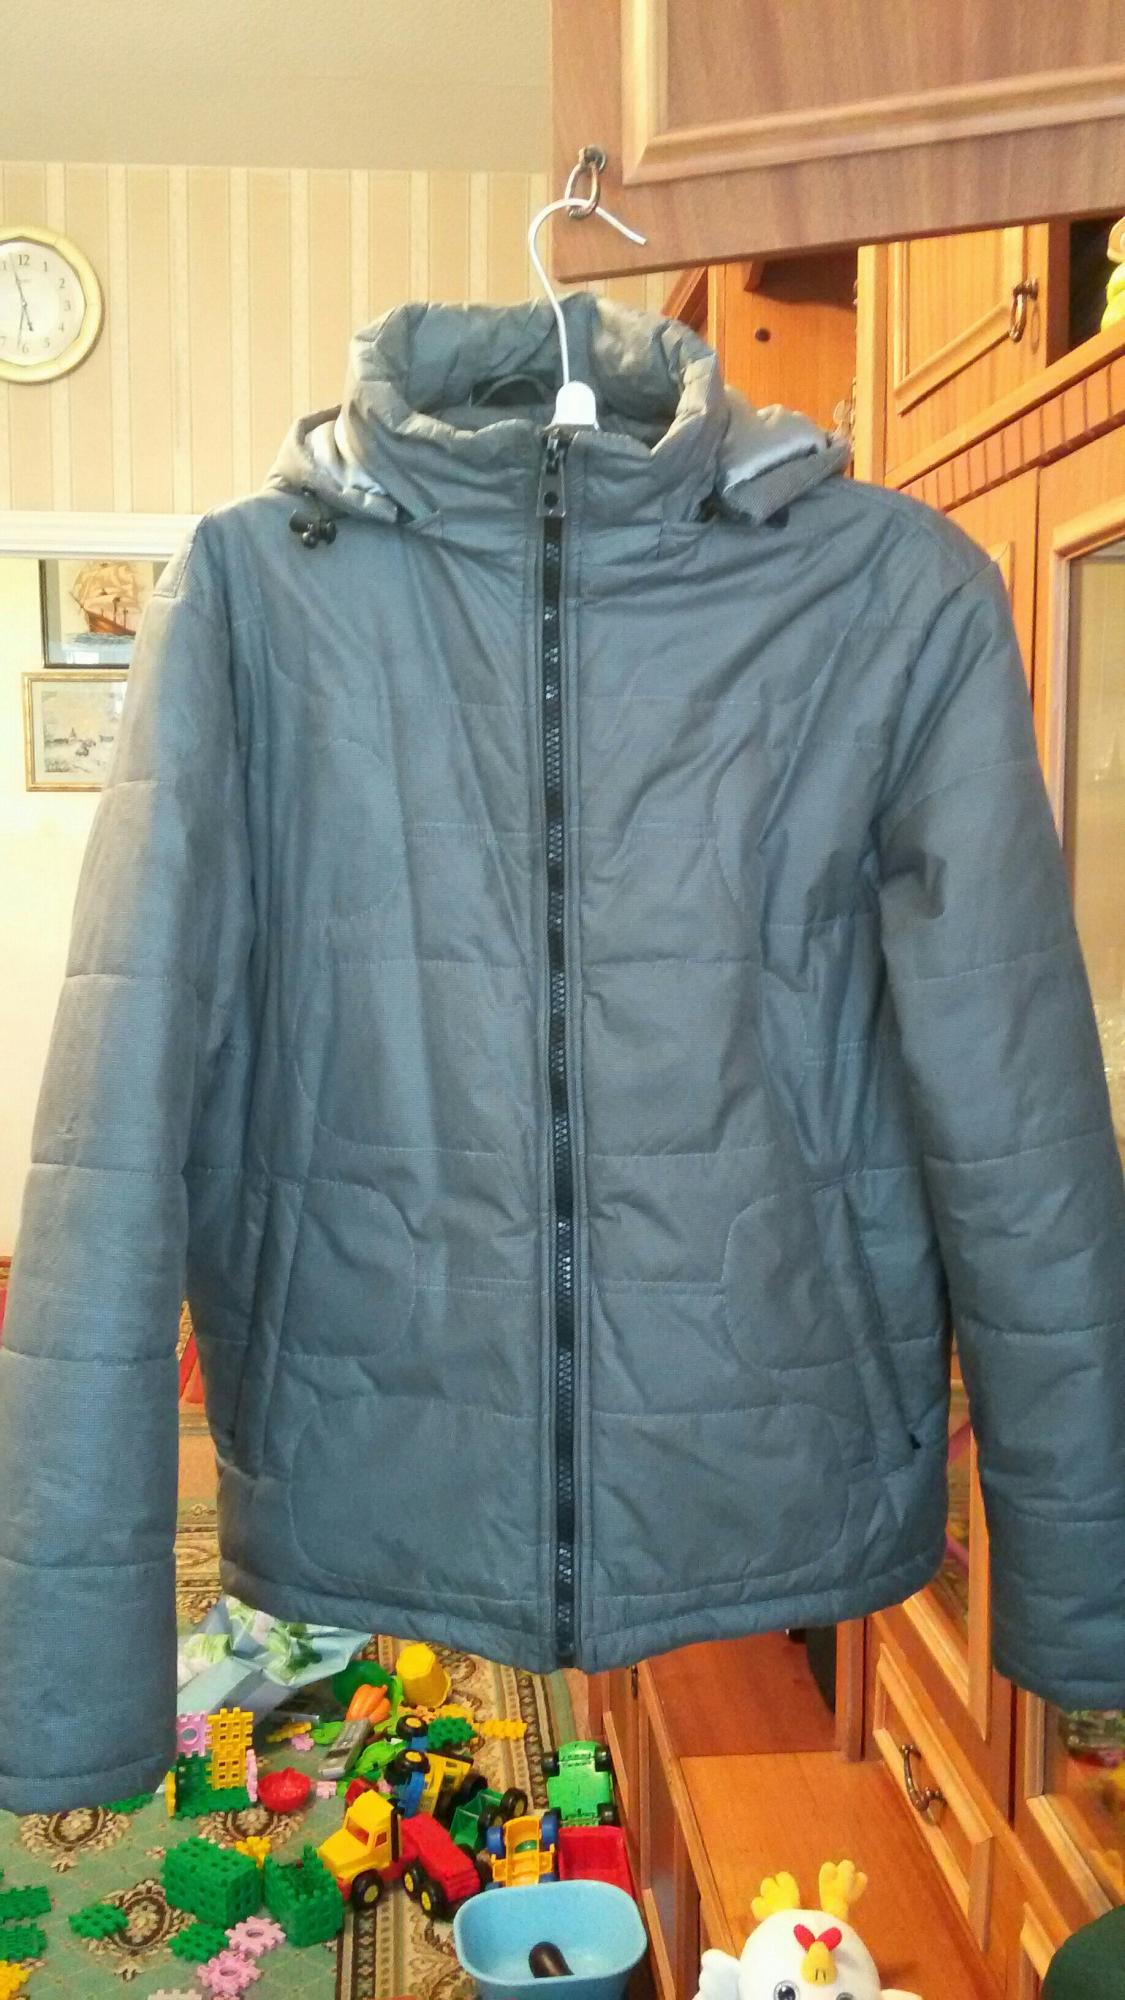 Авито мужской куртка 48. Одежда Lawine by Savage мужская куртка.